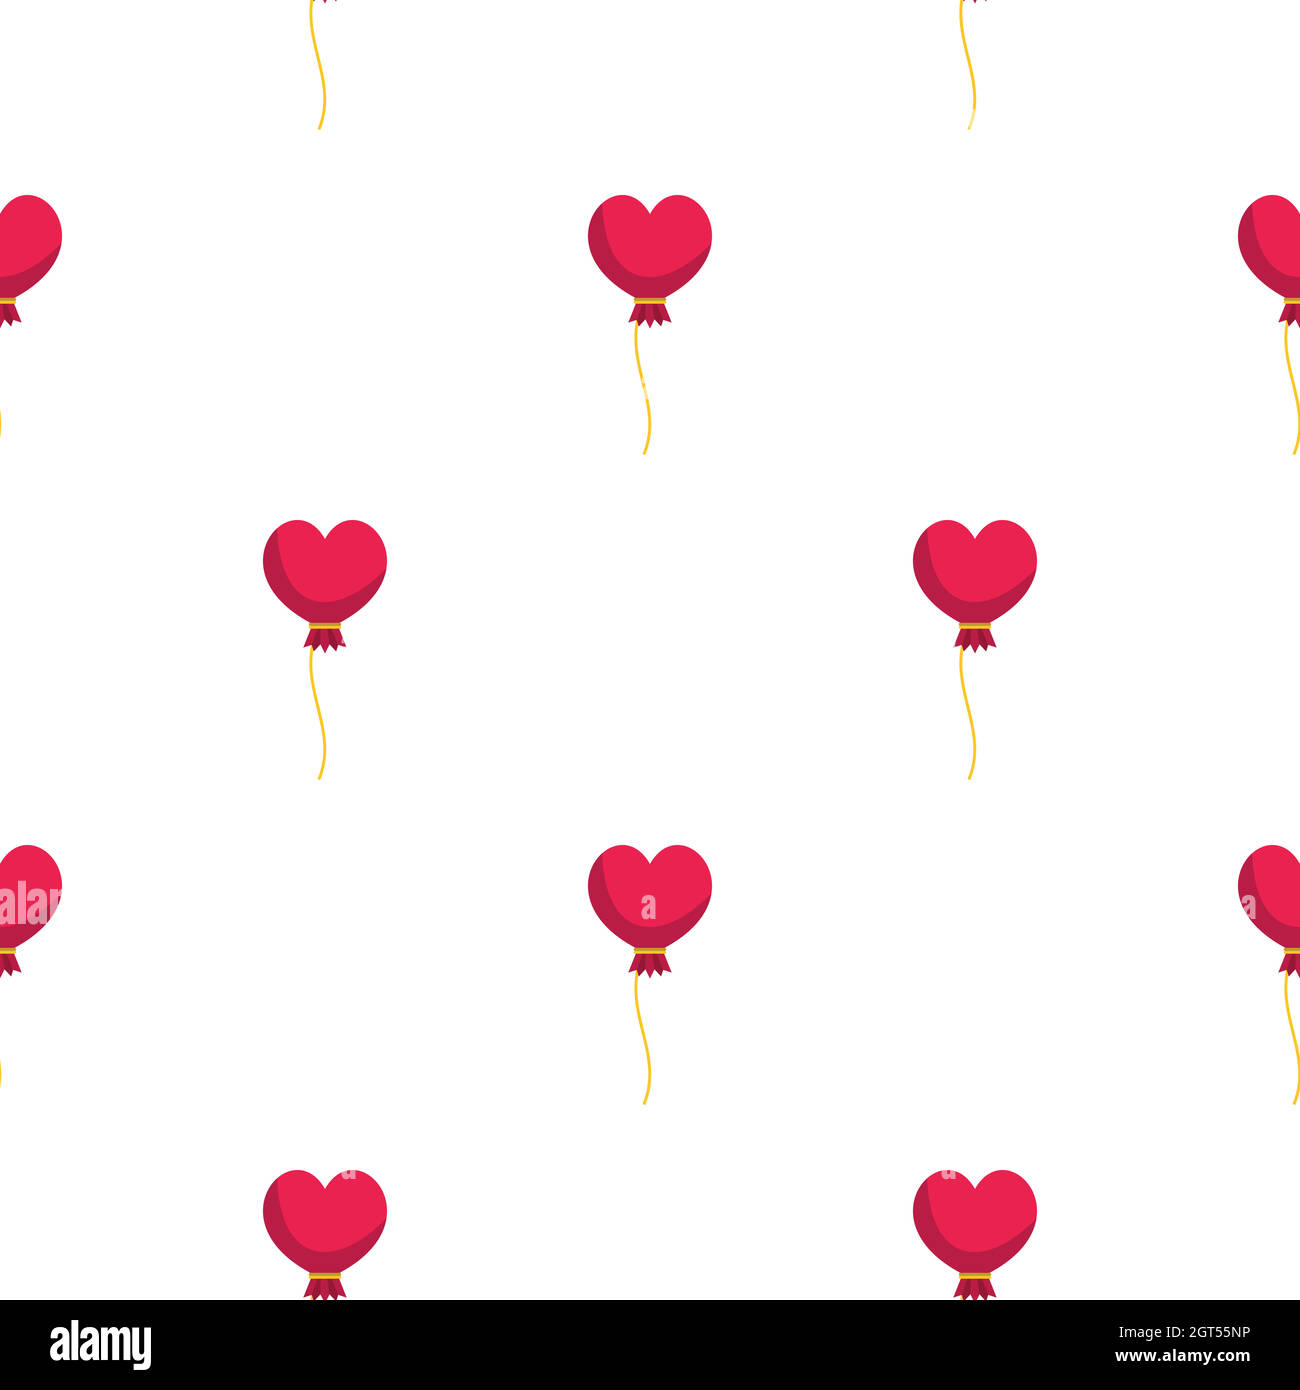 Pink heart balloon pattern seamless Stock Vector